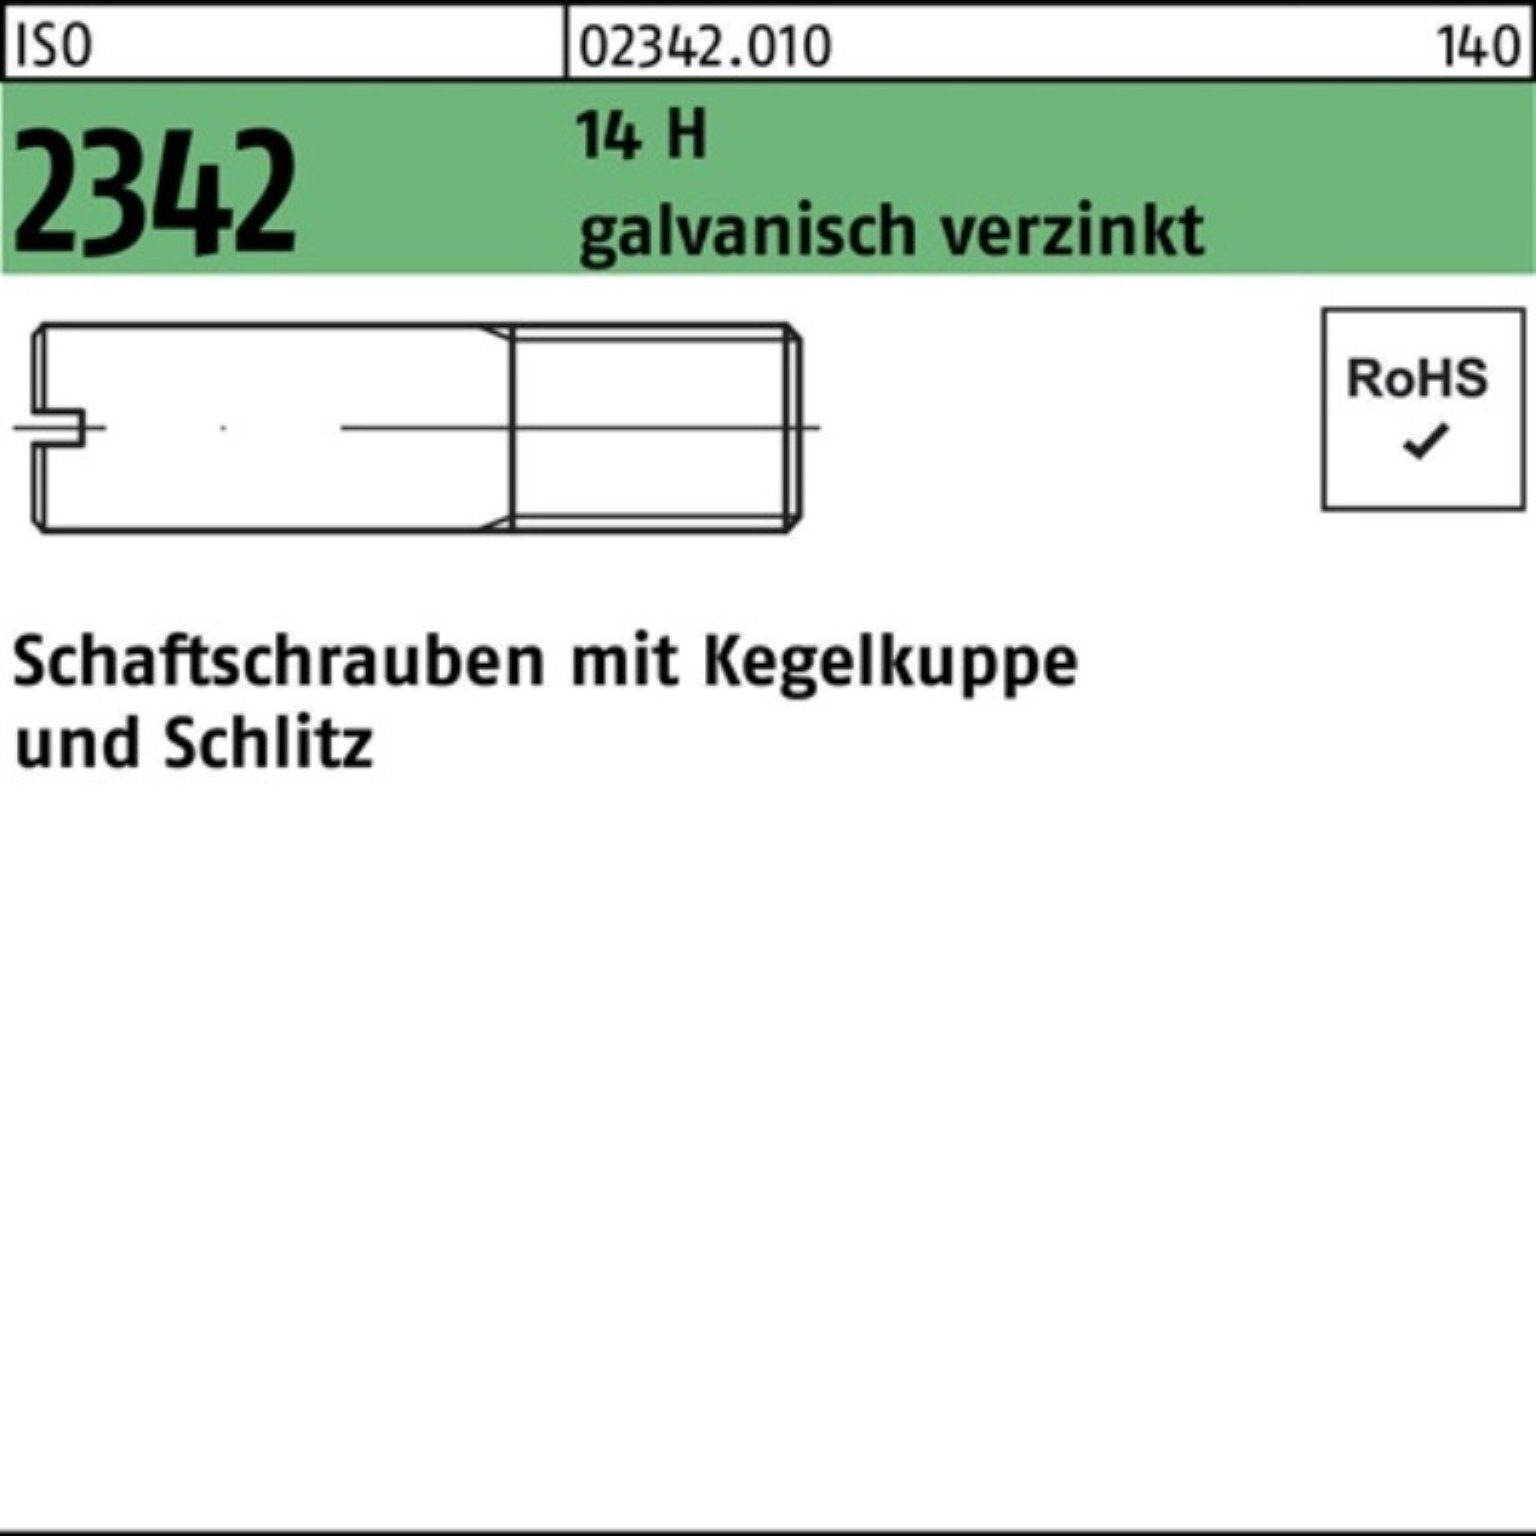 galv. Reyher Schaftschraube H 2342 Pack Kegelkuppe/Schlitz 14 100er M3x12 ISO Schraube